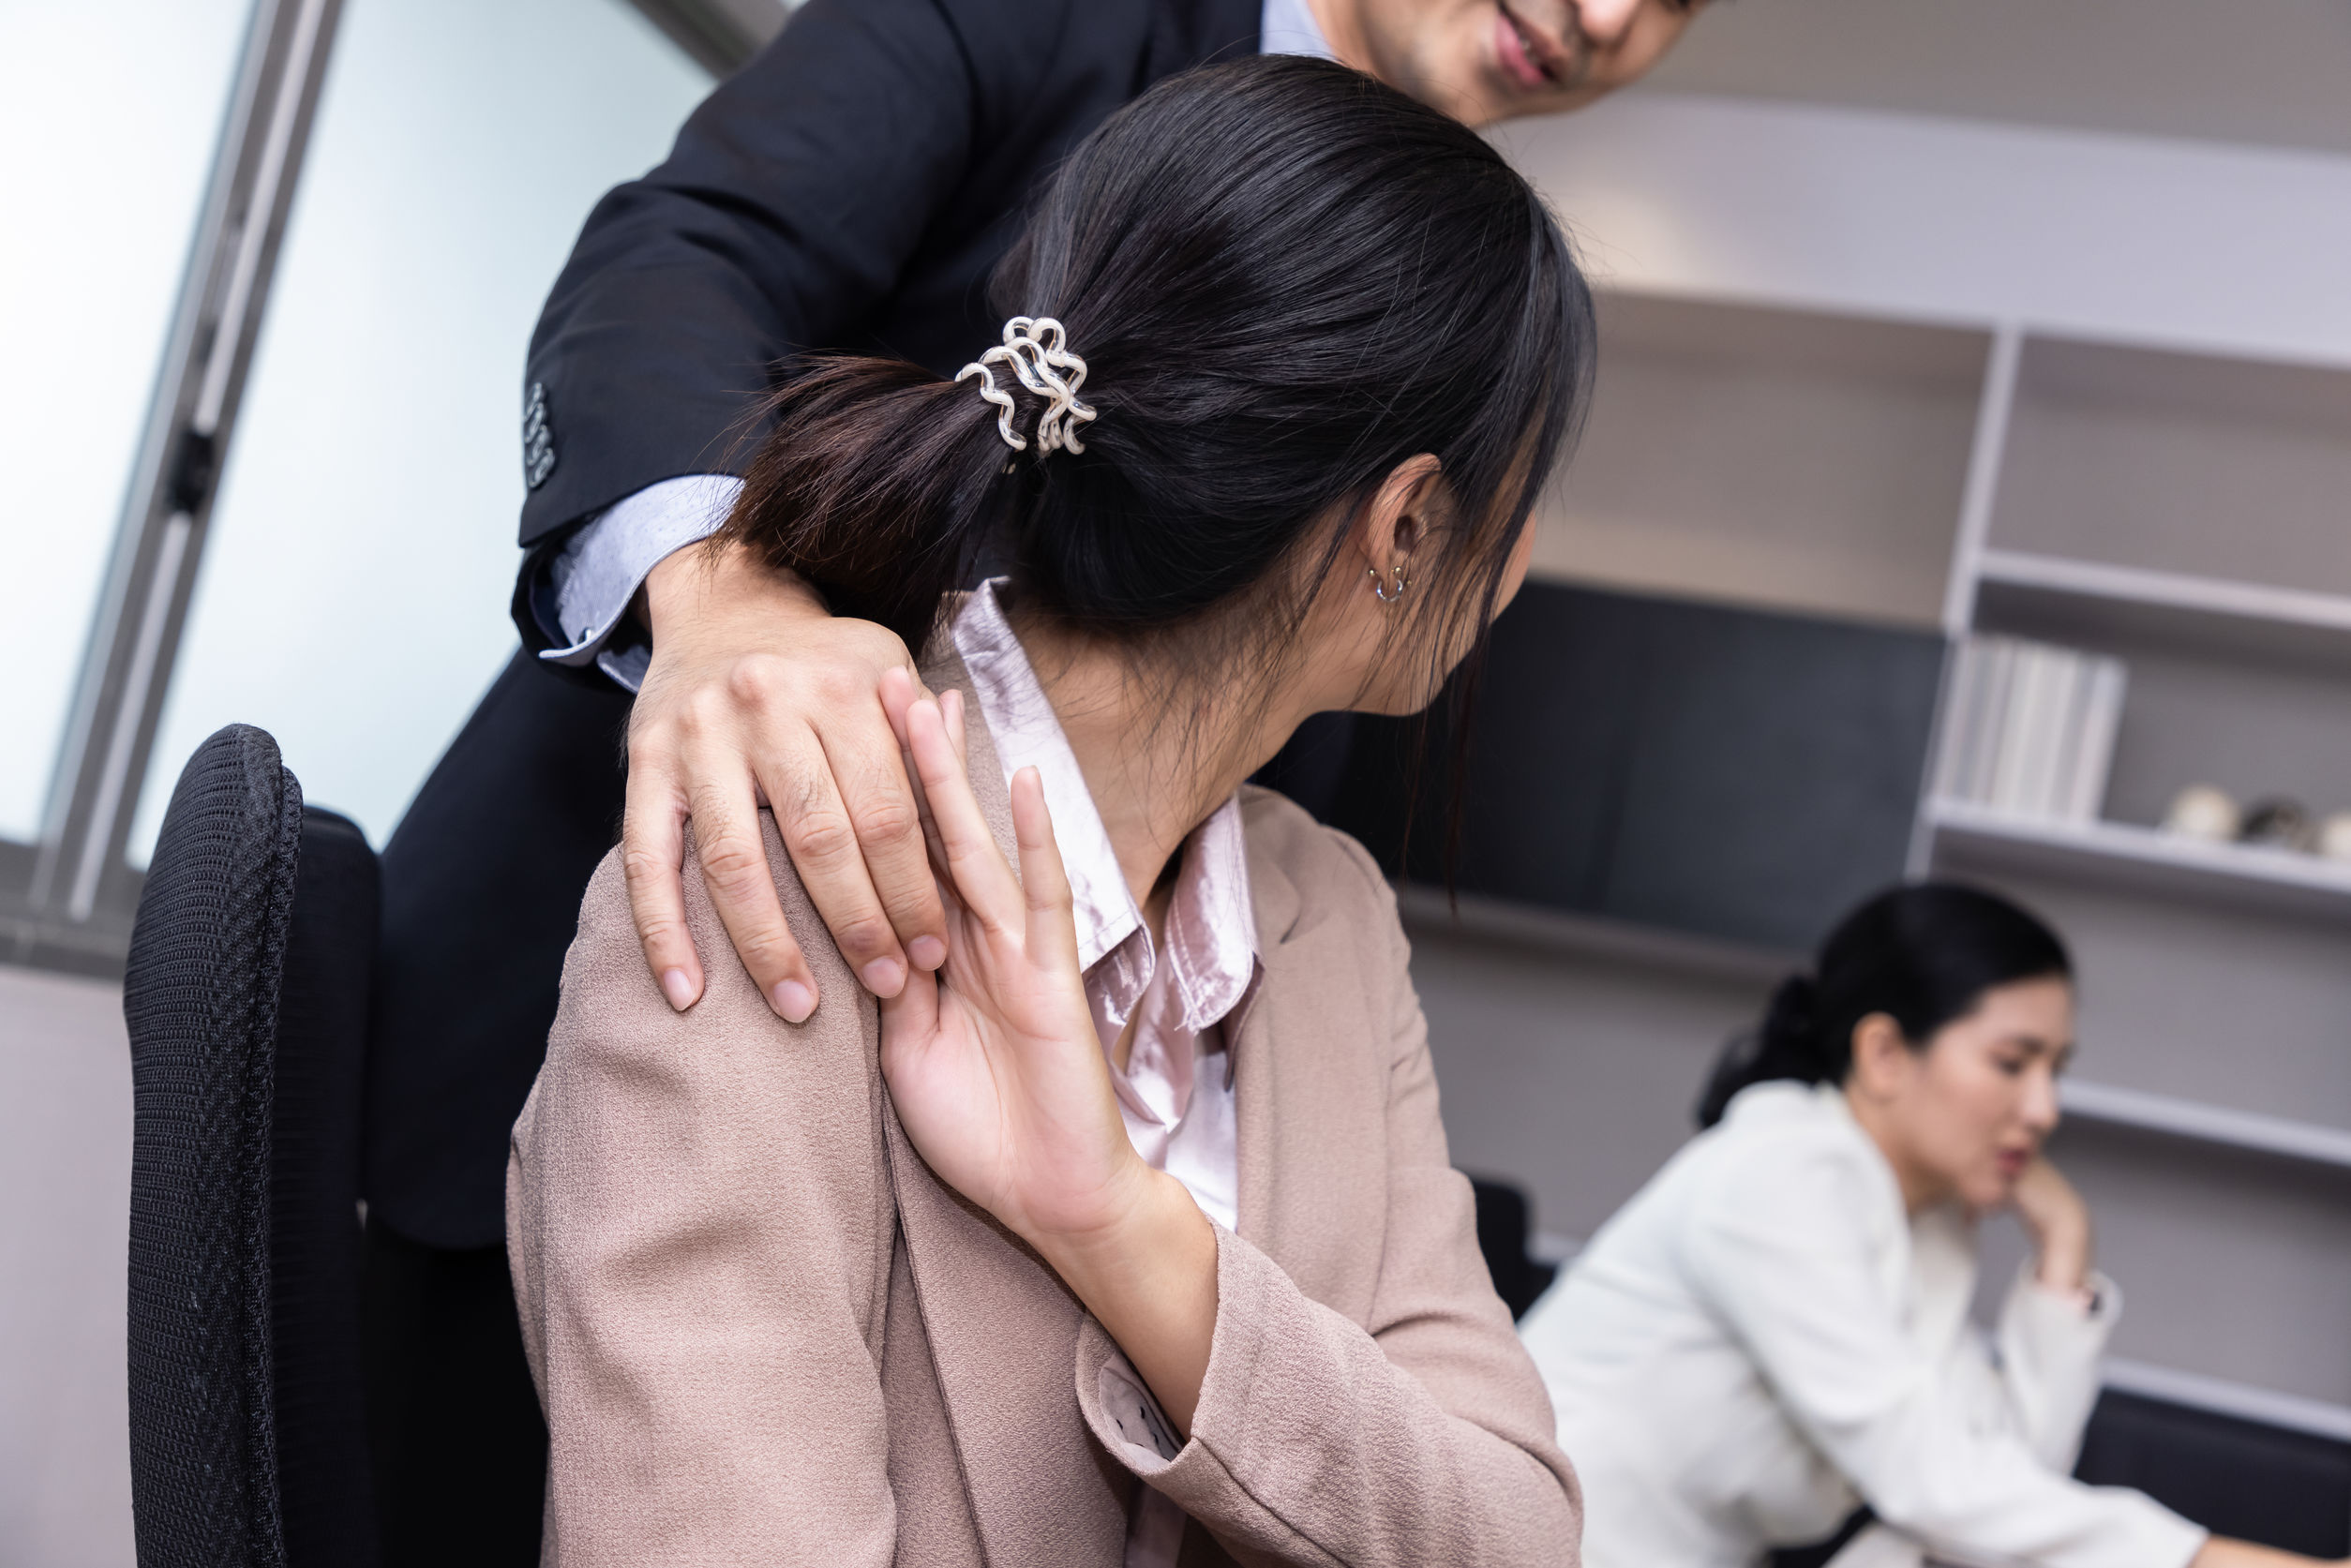 平機會提醒僱主和僱員對工作間的性騷擾應採取零容忍態度，僱主應建立預防和處理性騷擾的機制，並在發生性騷擾事件時採取果斷行動。